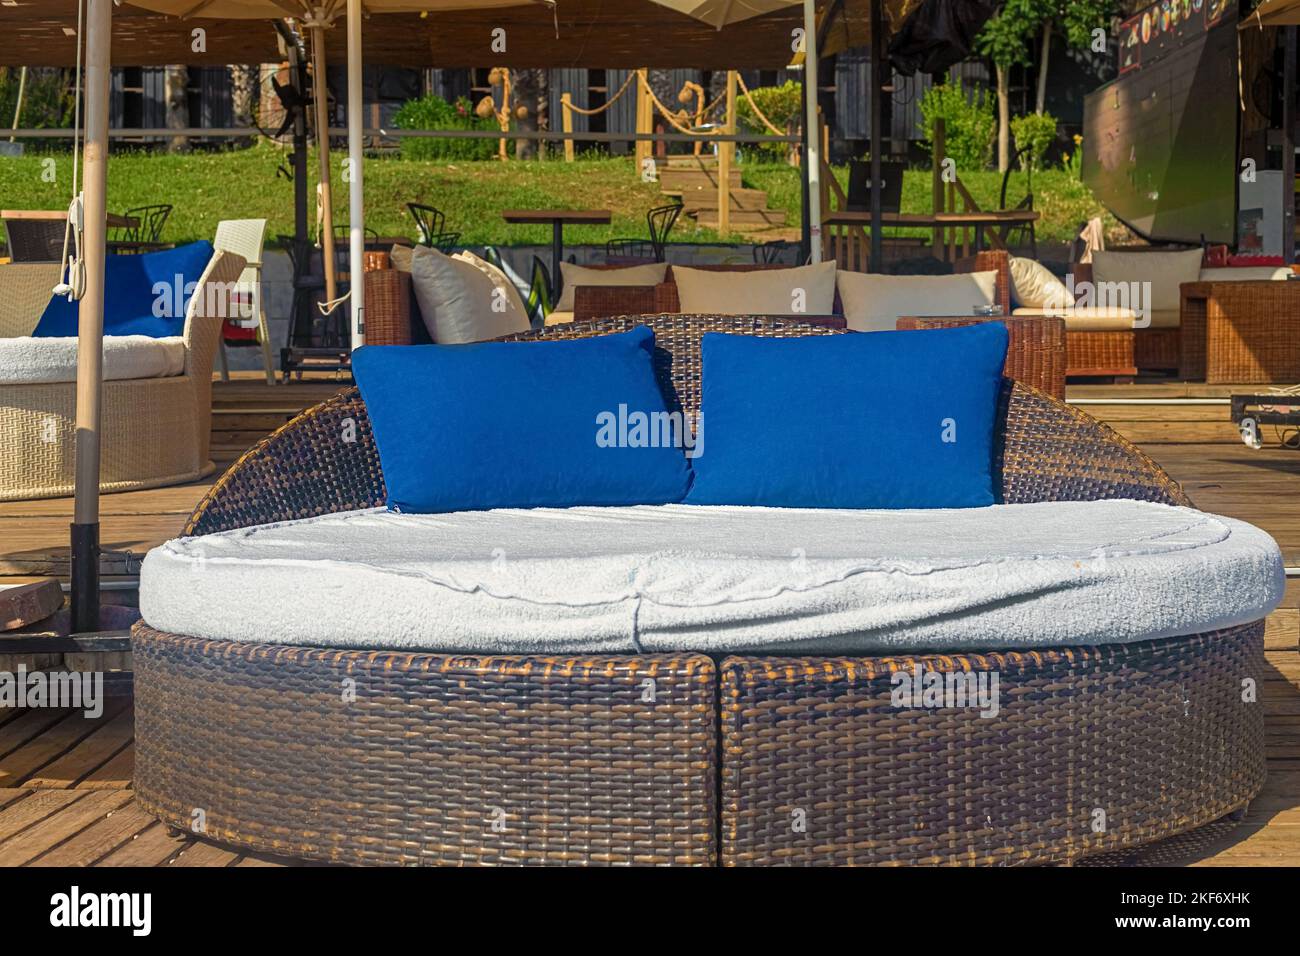 Blick auf schicke VIP-Chauffeure in Form eines Bettes mit blauen Kissen in einem Café am Meer. Kemer, Türkei Stockfoto